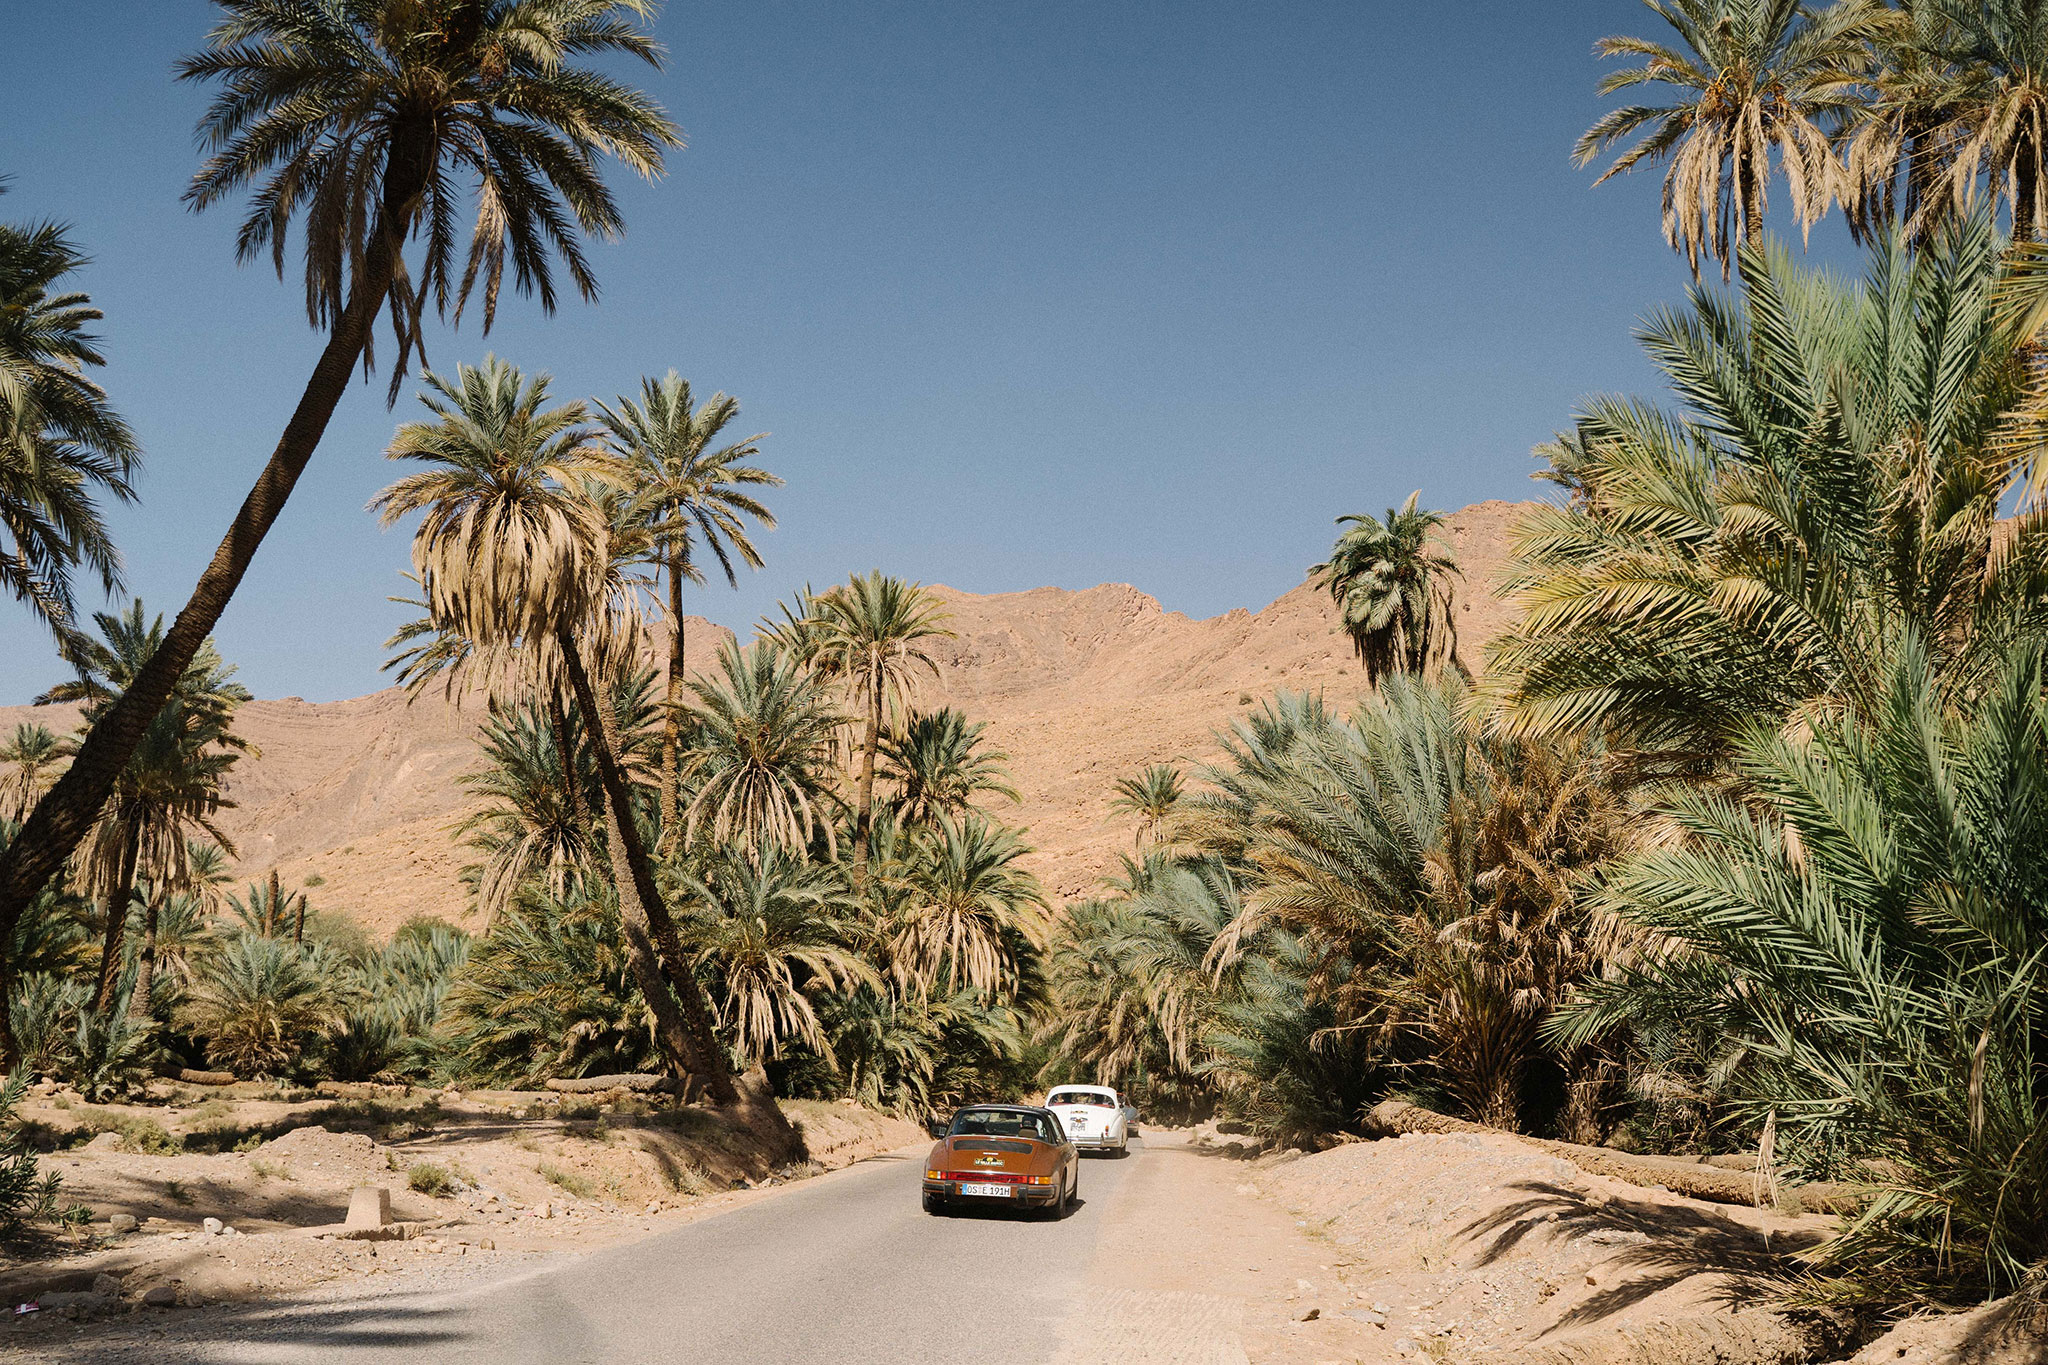 Des paysages inoubliables qui vous laisseront de merveilleux souvenirs - Mille Maroc Classic 2022.